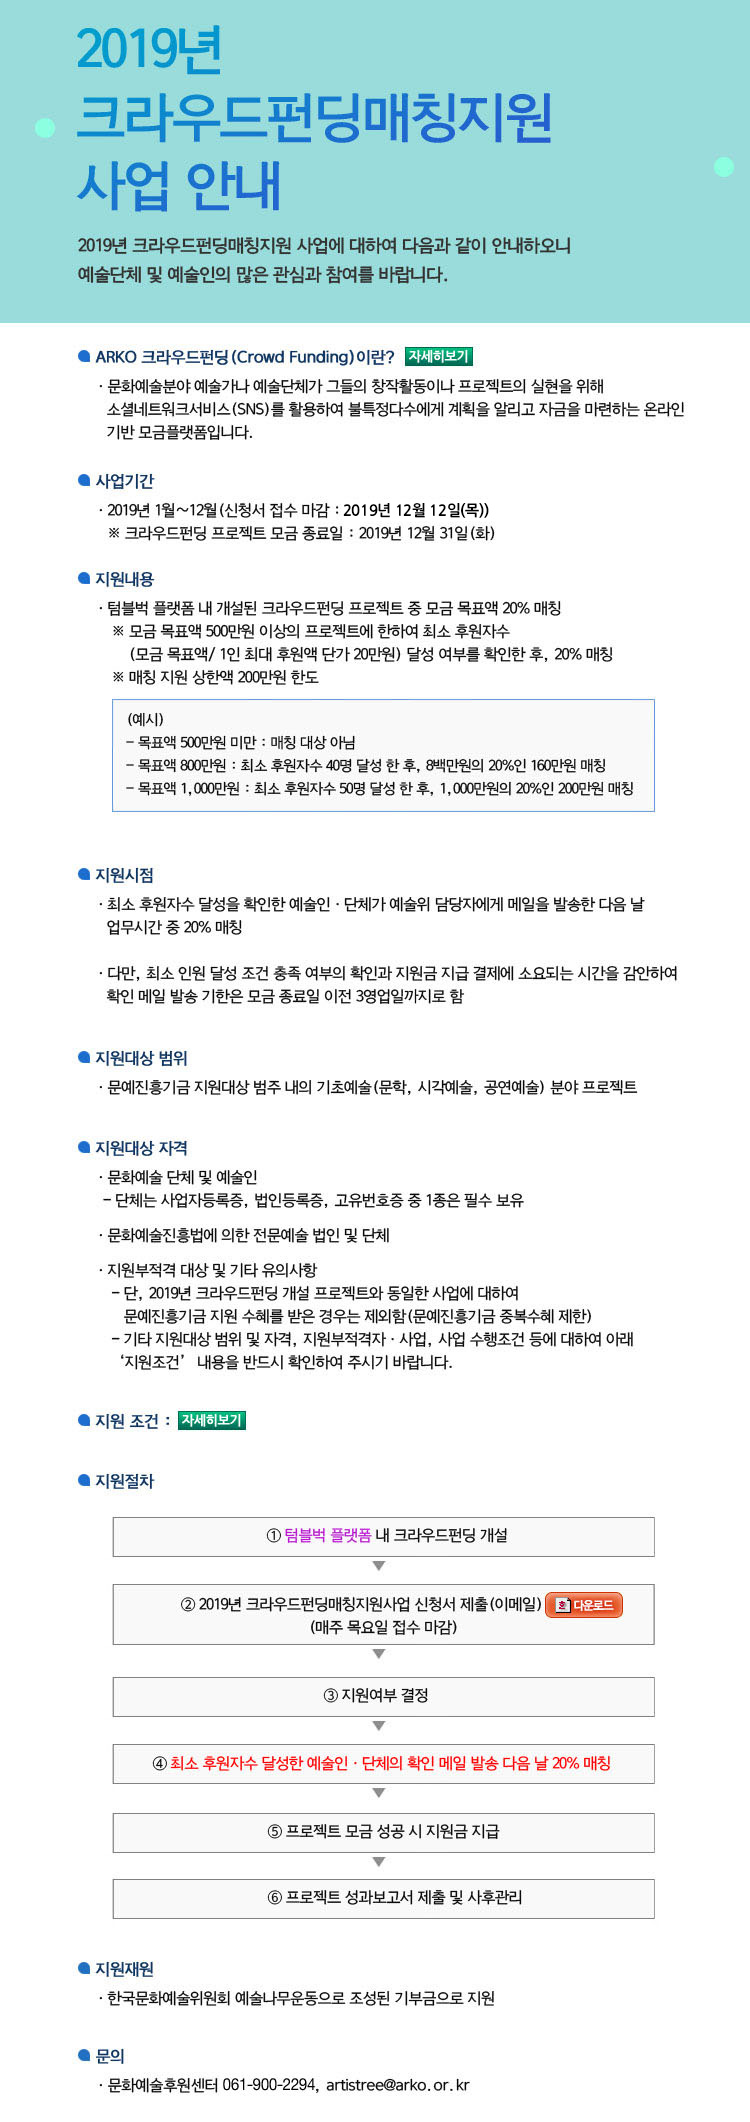  2019년 크라우드펀딩매칭지
원 사업 안내 